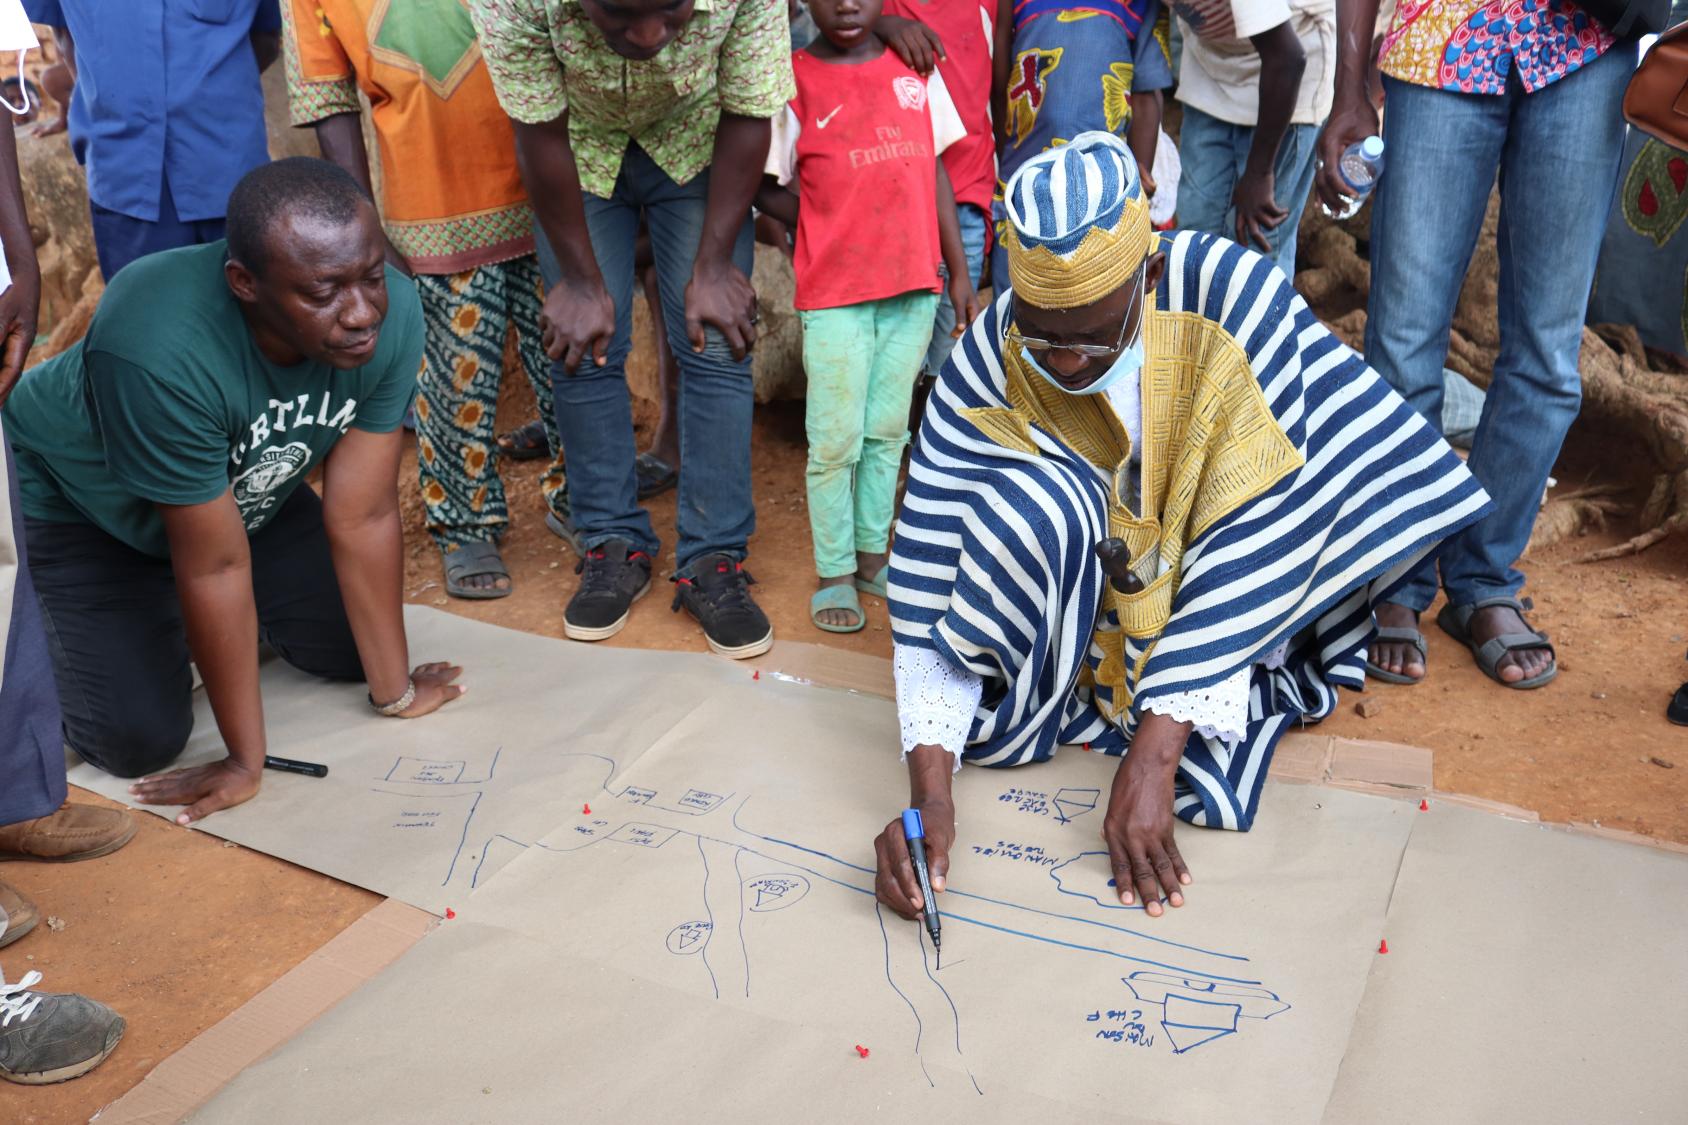 Un homme vêtu d'un habit traditionnel ivoirien est accroupi au sol, entouré de plusieurs personnes, et réalise un inventaire sur une large feuille de papier.